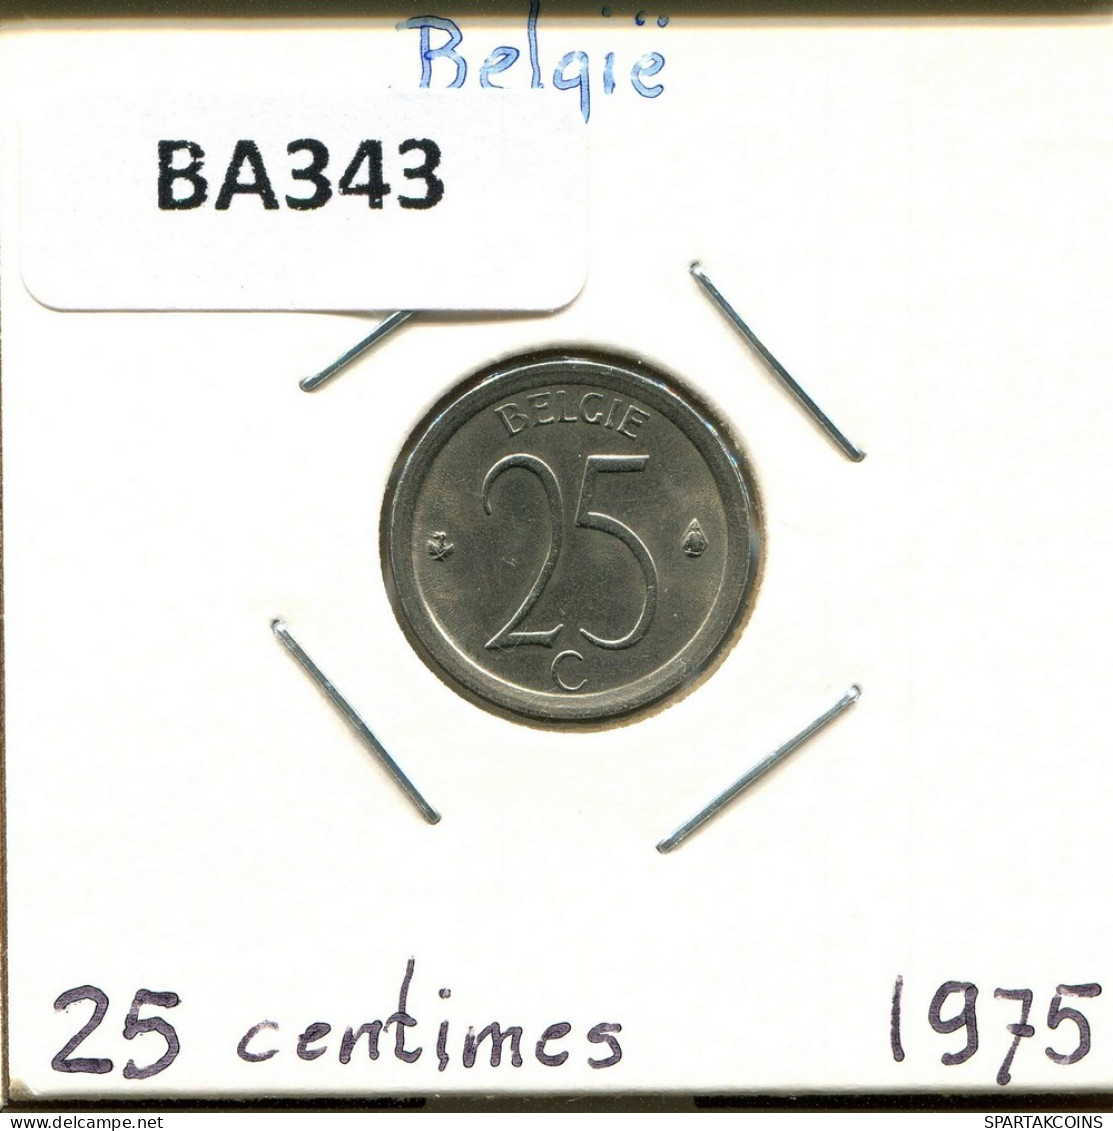 25 CENTIMES 1975 DUTCH Text BELGIQUE BELGIUM Pièce #BA343.F.A - 25 Cent